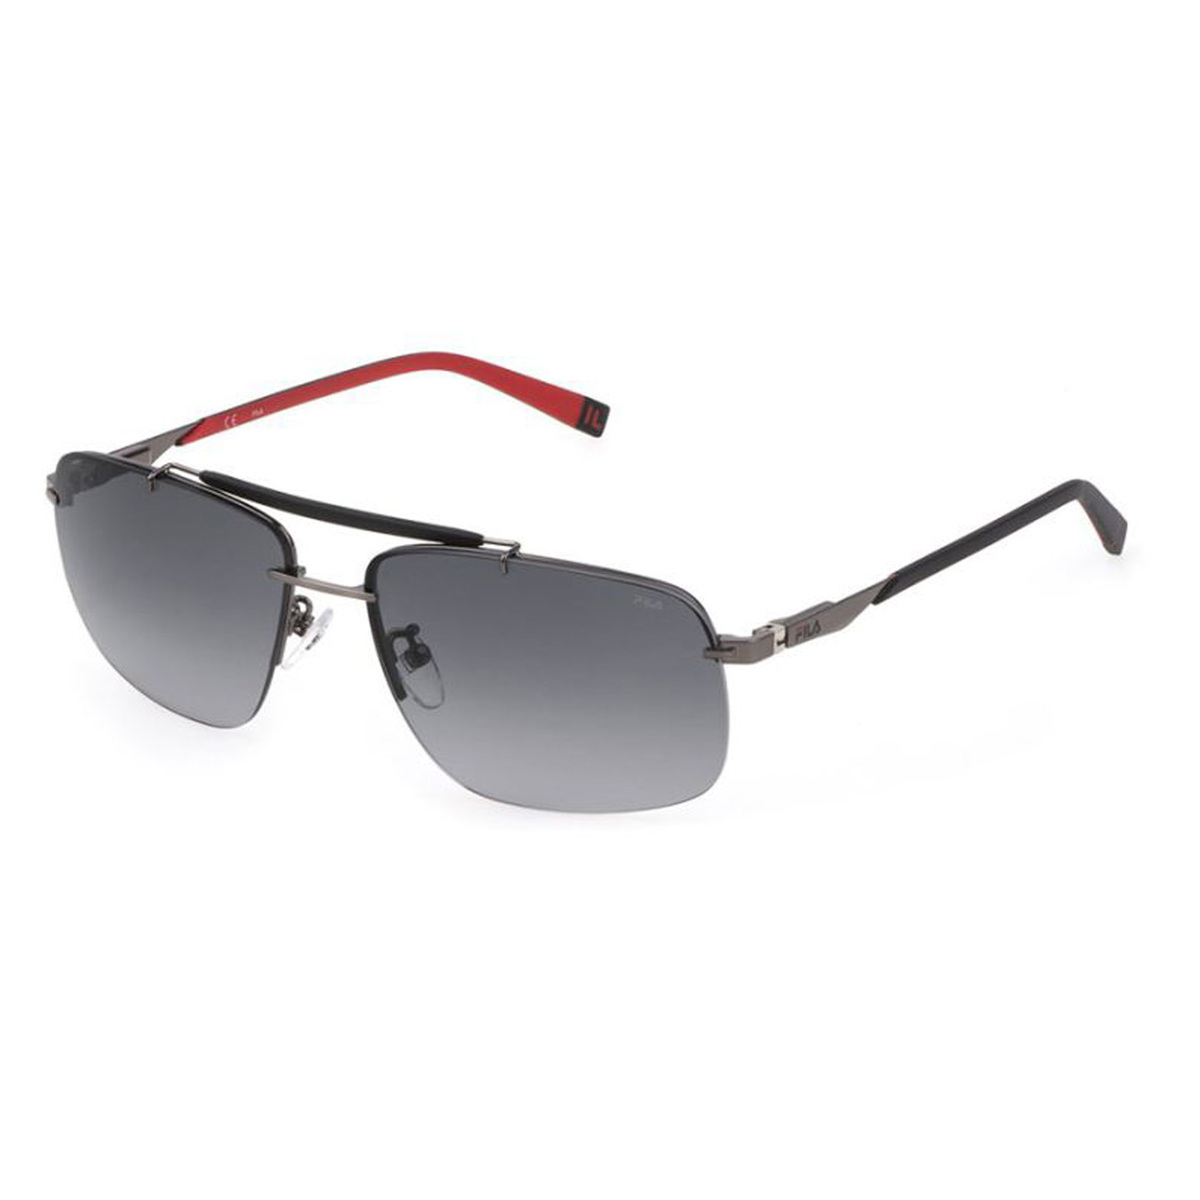 Fila Men's Square Sunglasses, Smoke Gradient, I210 610568 Sqr Gmtl